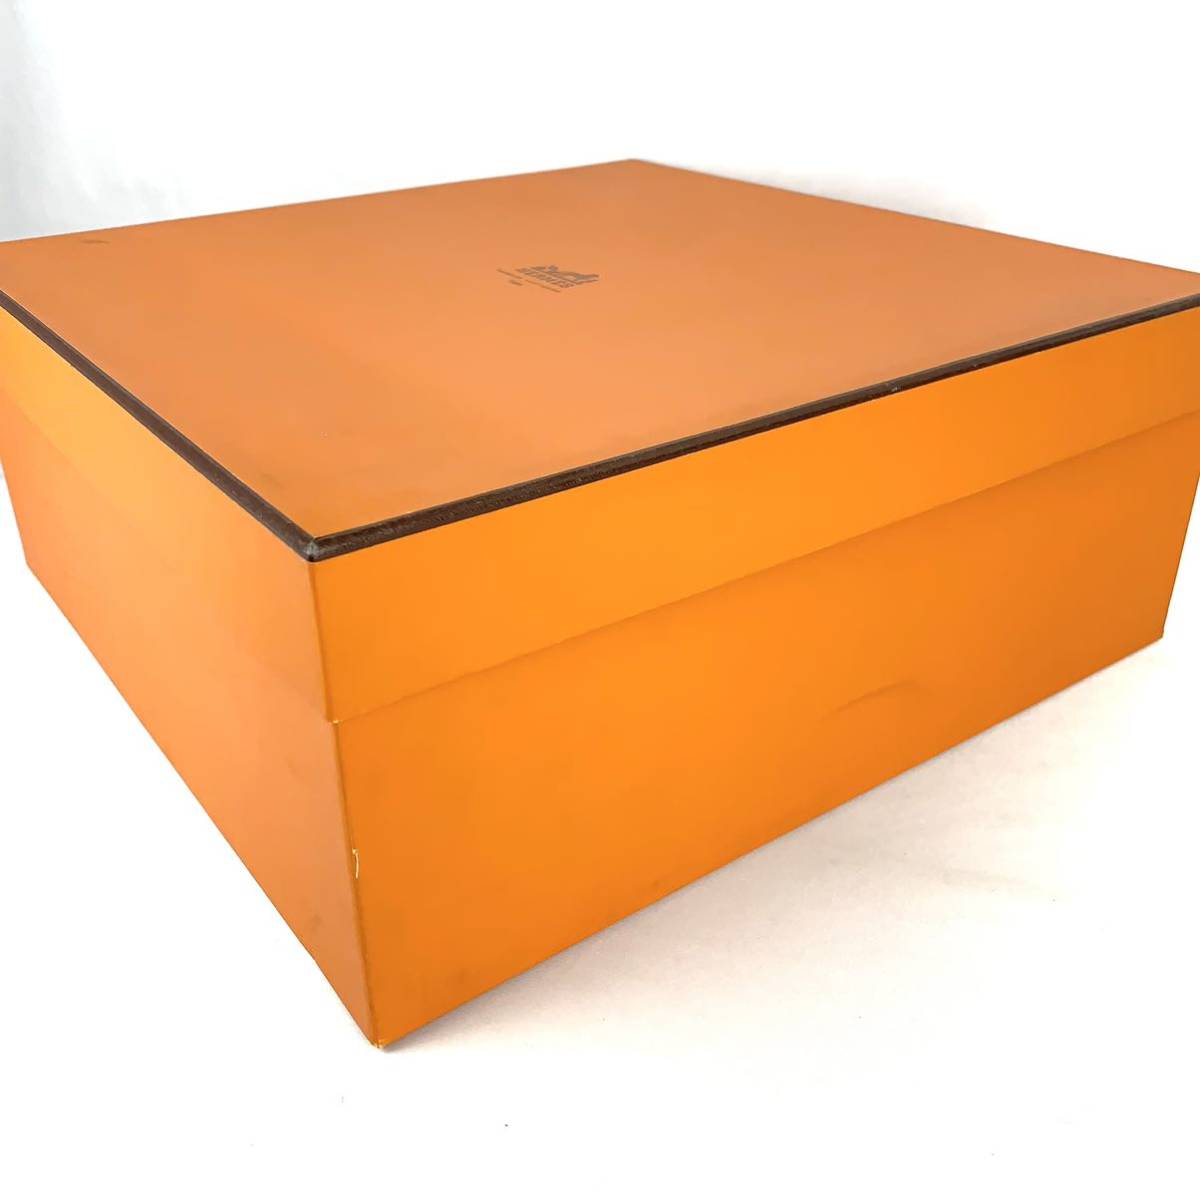 HERMES エルメス 特大 空箱 空き箱 43×43×17.5cm BOX ボックス 化粧箱 大型 オレンジ オレンジボックス バッグ用_画像3